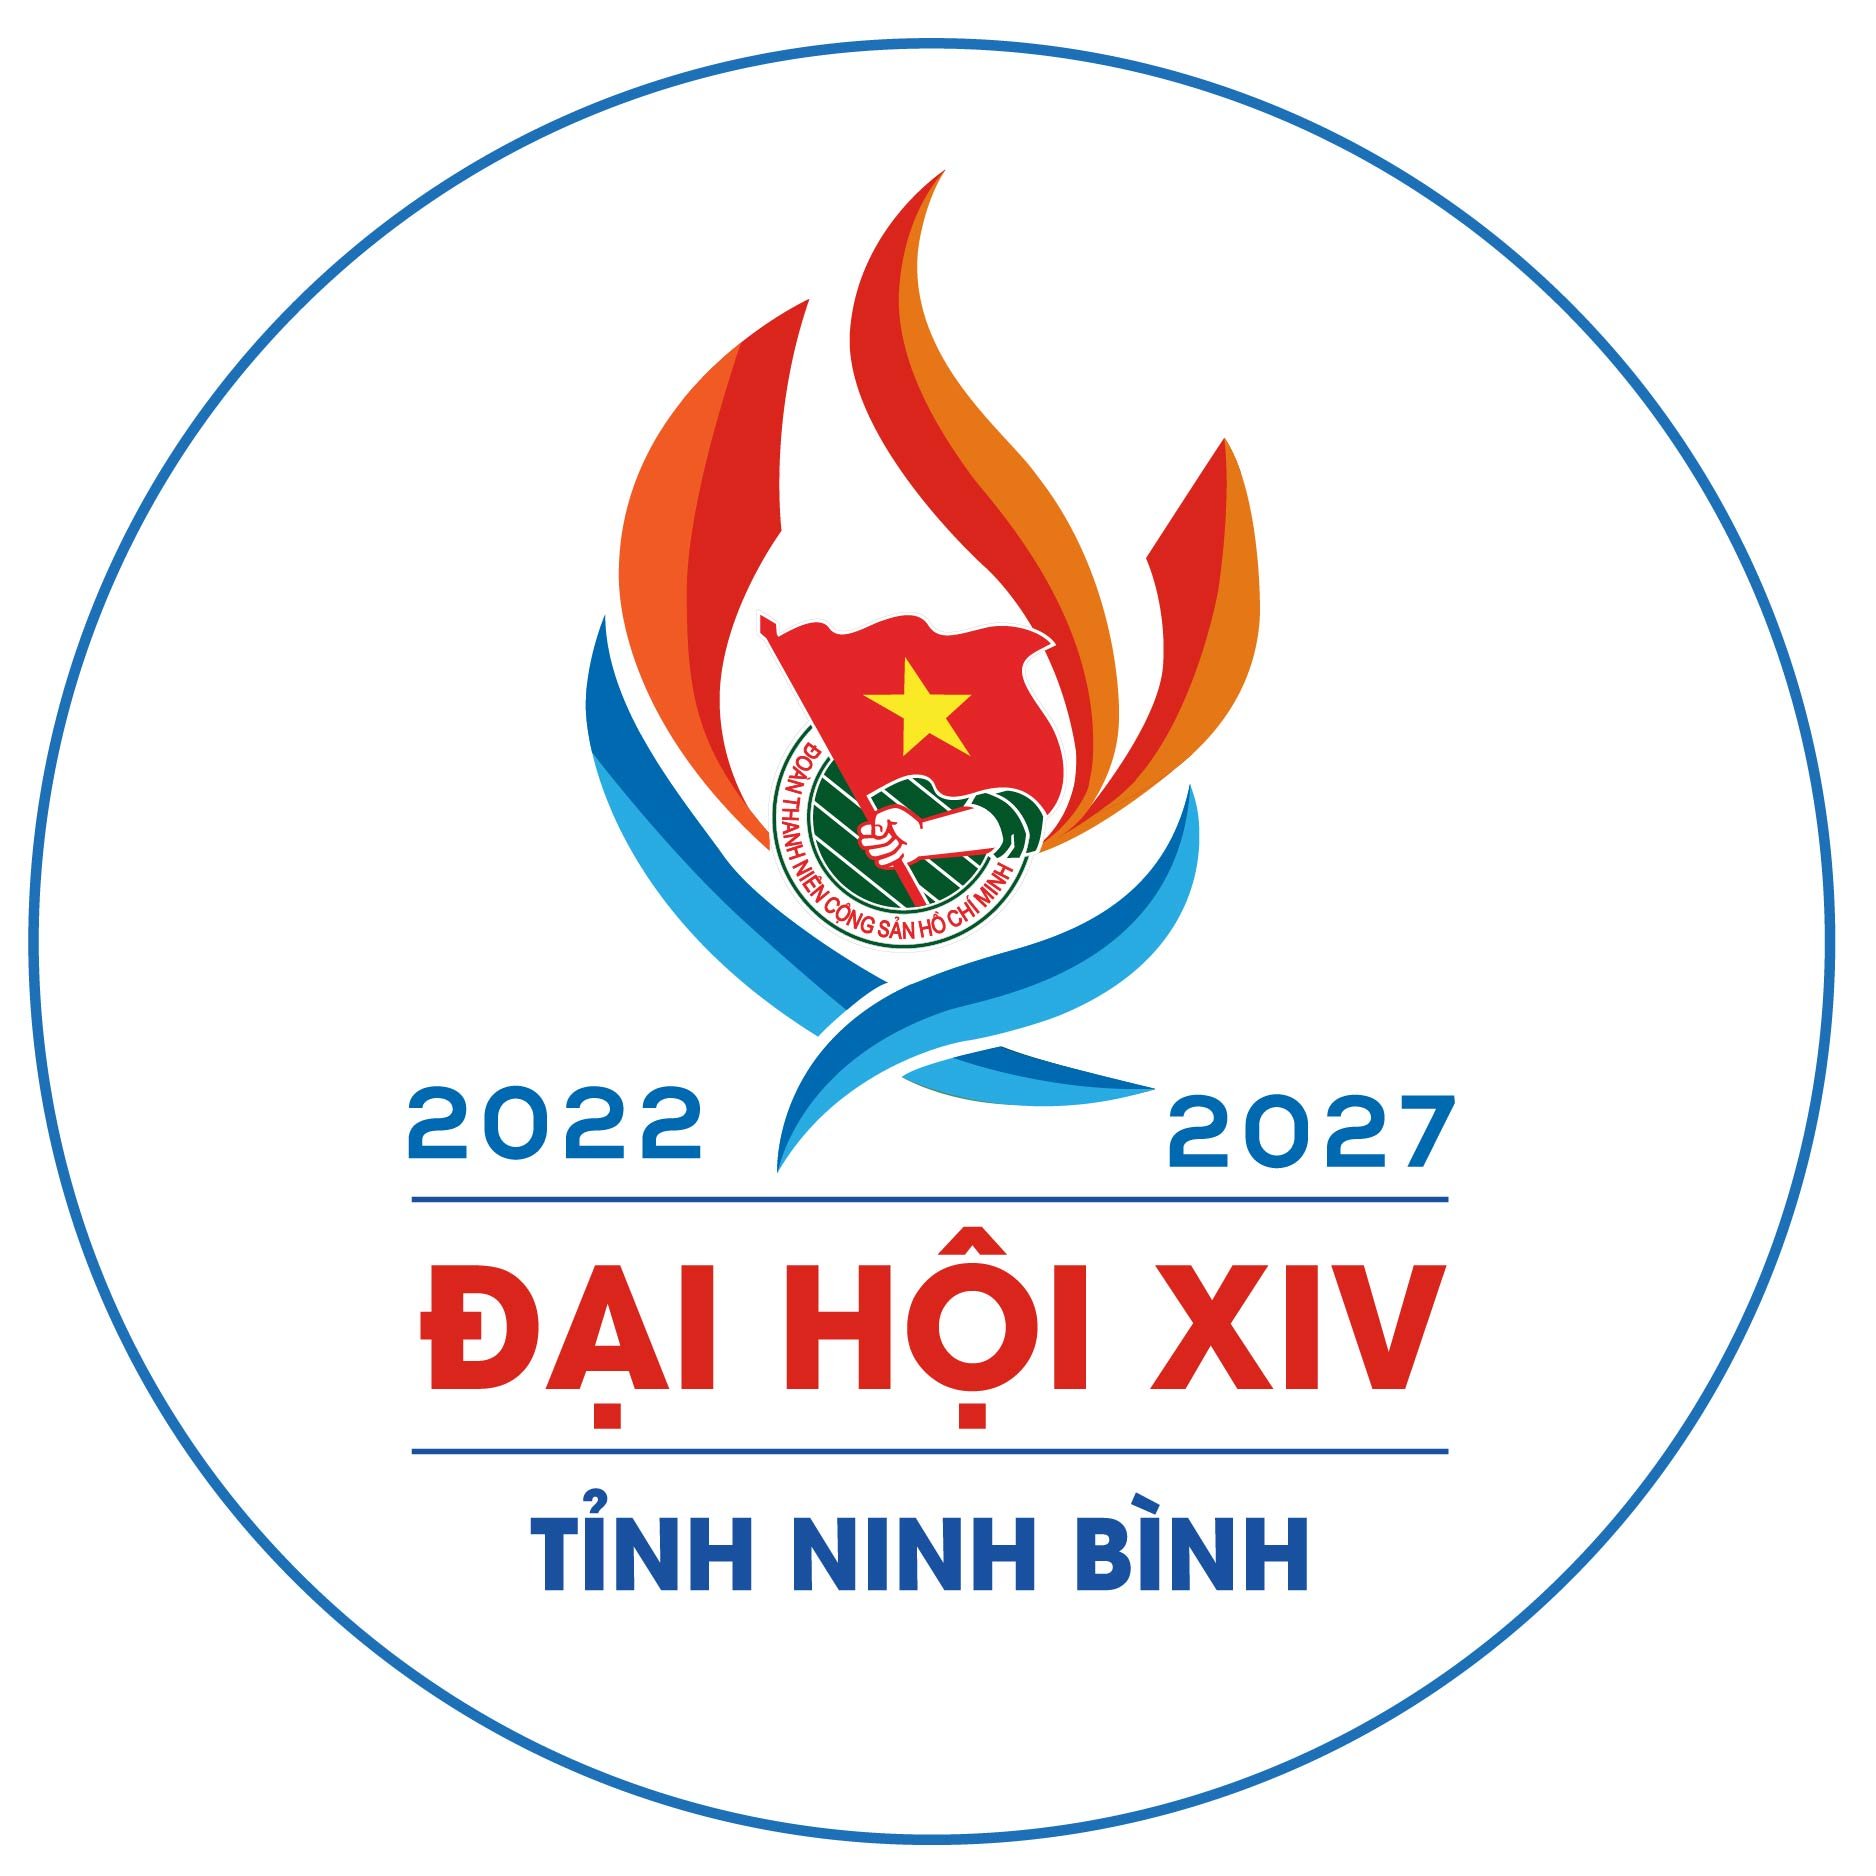 Đoàn TNCS Hồ Chí Minh đã gắn liền với cuộc đời cách mạng của cả dân tộc Việt Nam. Năm 2024, các hoạt động của Đoàn sẽ không chỉ dừng lại ở việc tổ chức các hoạt động tình nguyện mà còn tham gia nhiều hơn trong phát triển kinh tế và xã hội. Mỗi thành viên đoàn sẽ trở thành những người tiên phong, mẫu gương cho các thế hệ sau cũng như góp phần thực hiện ước mơ đất nước giàu mạnh, dân chủ, công bằng và văn minh.  So, Finally 2024 lại là một năm đầy hy vọng, đổi mới và phát triển của con người Việt Nam.